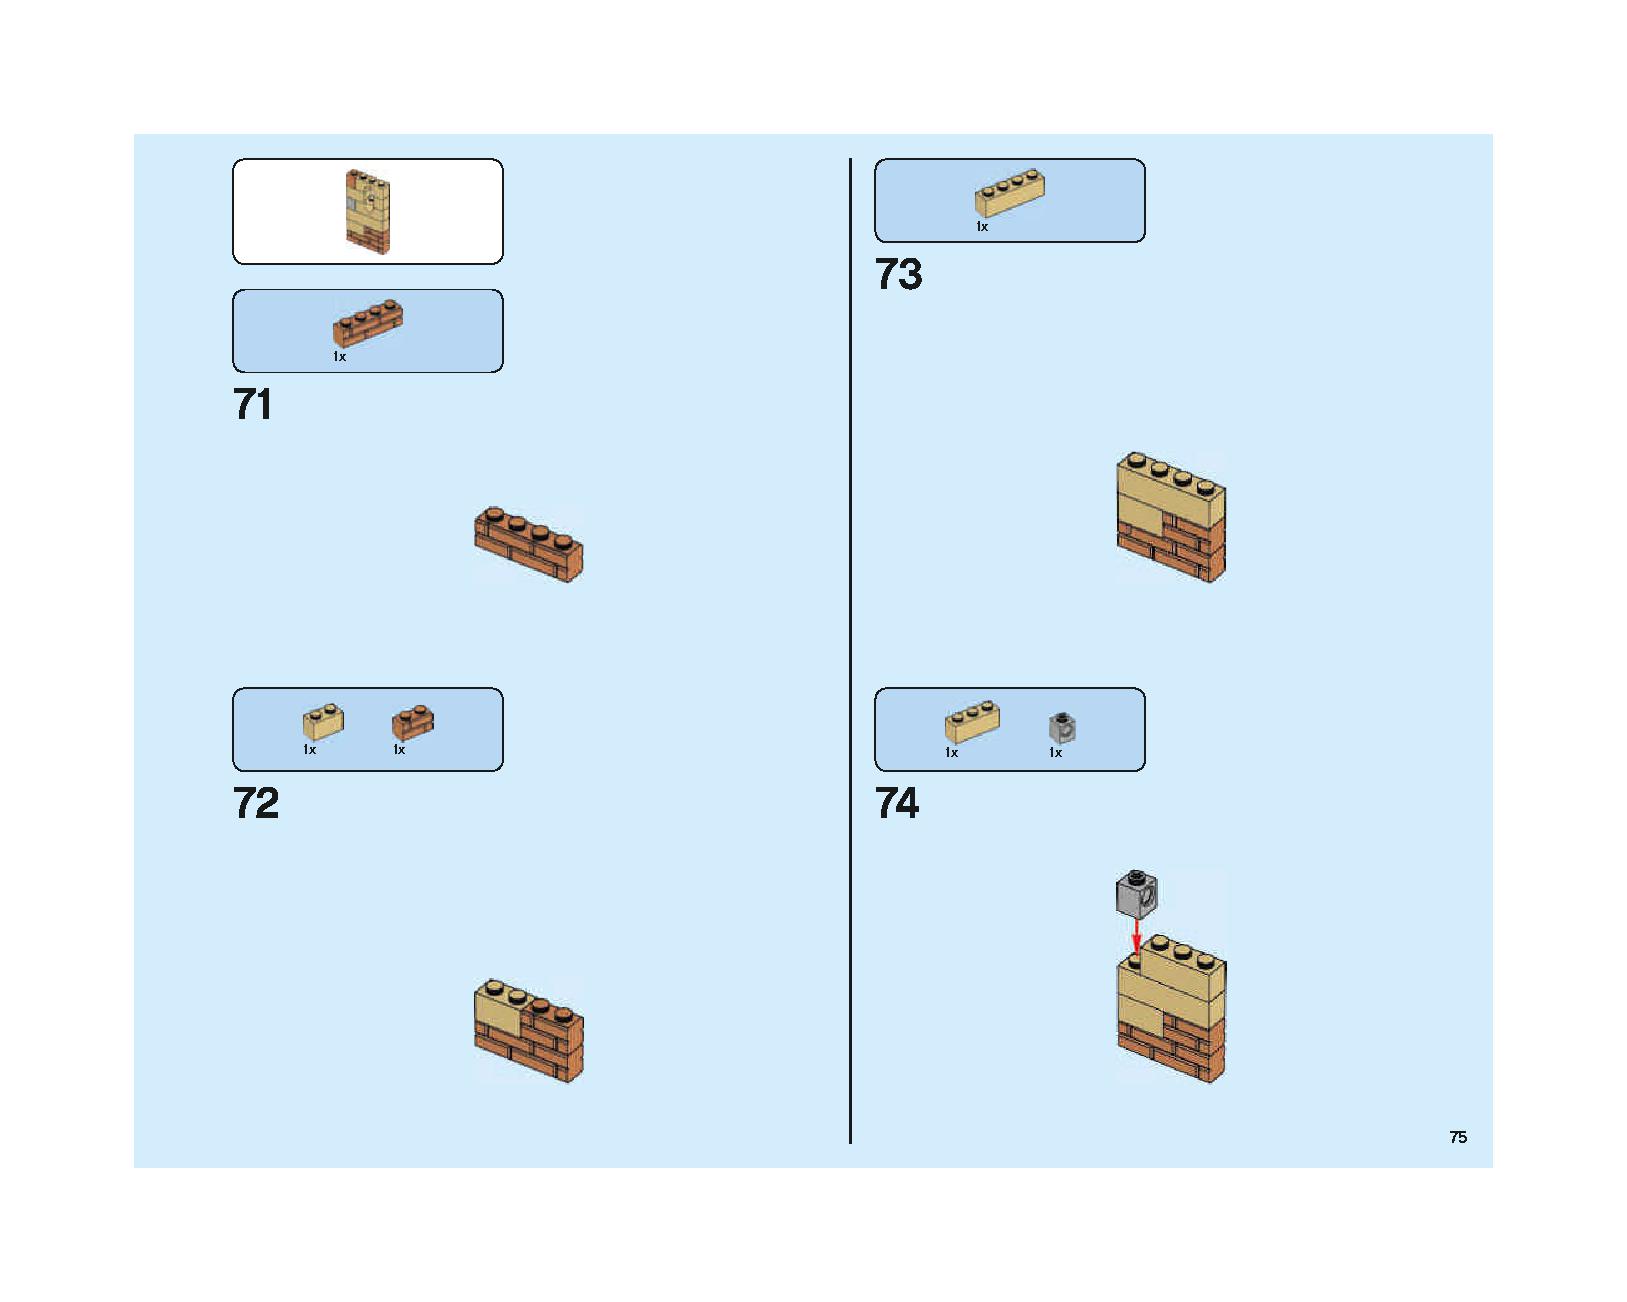 ホグワーツの大広間 75954 レゴの商品情報 レゴの説明書・組立方法 75 page